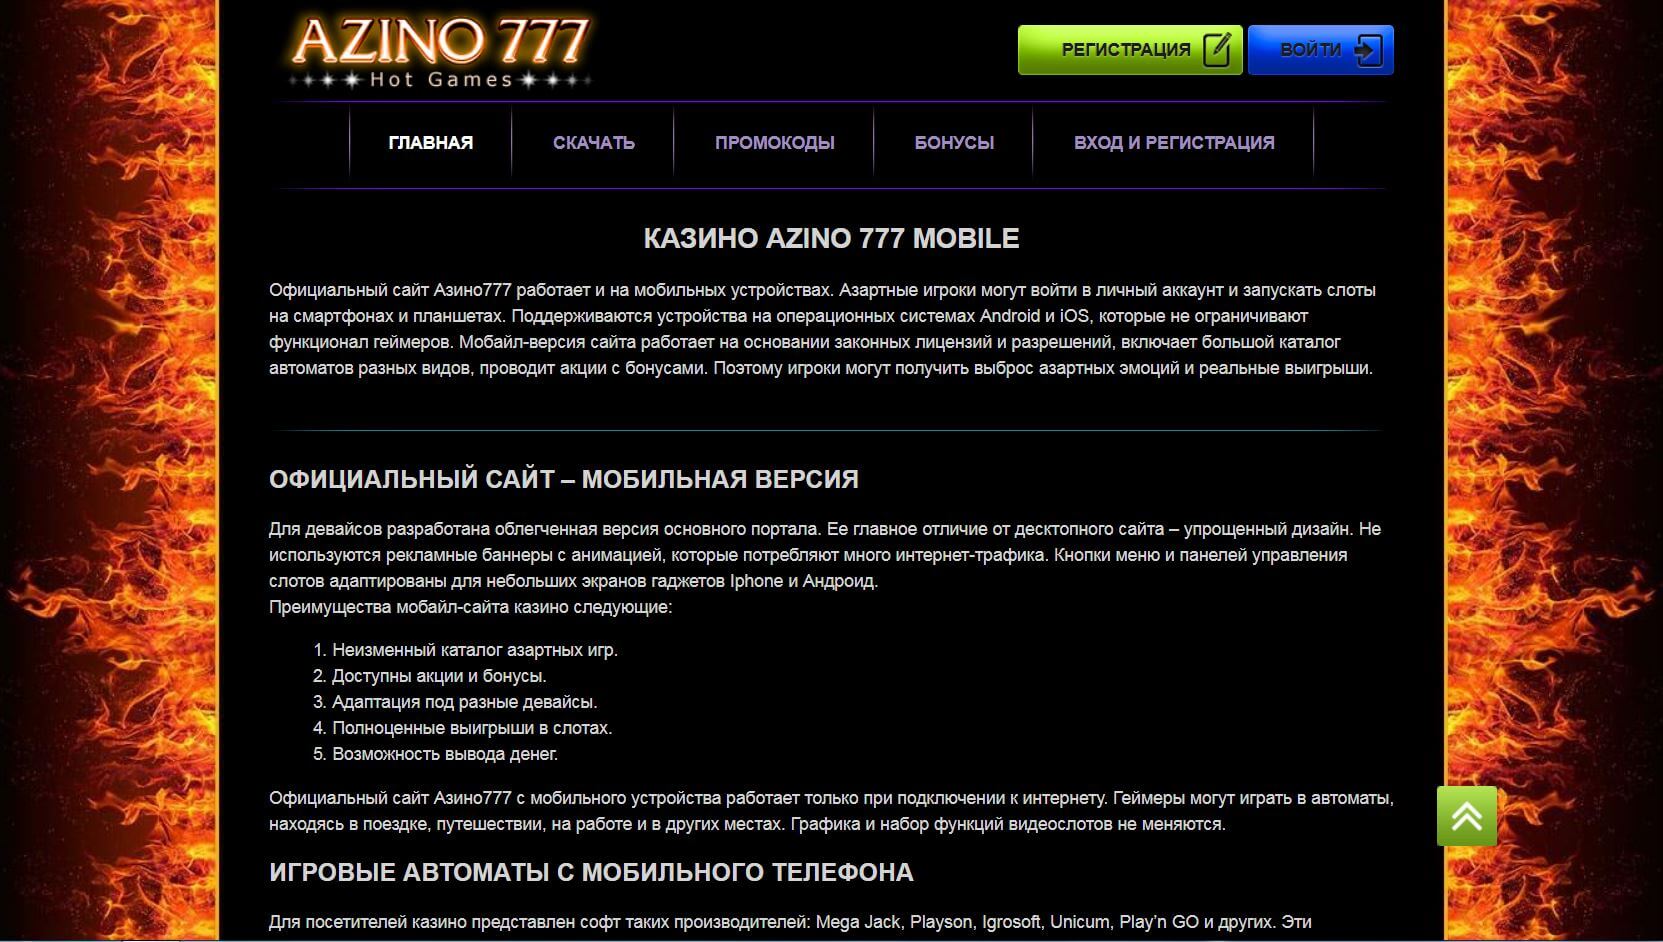 Azino777 azino777 site official top. Азино777 вывод денег.